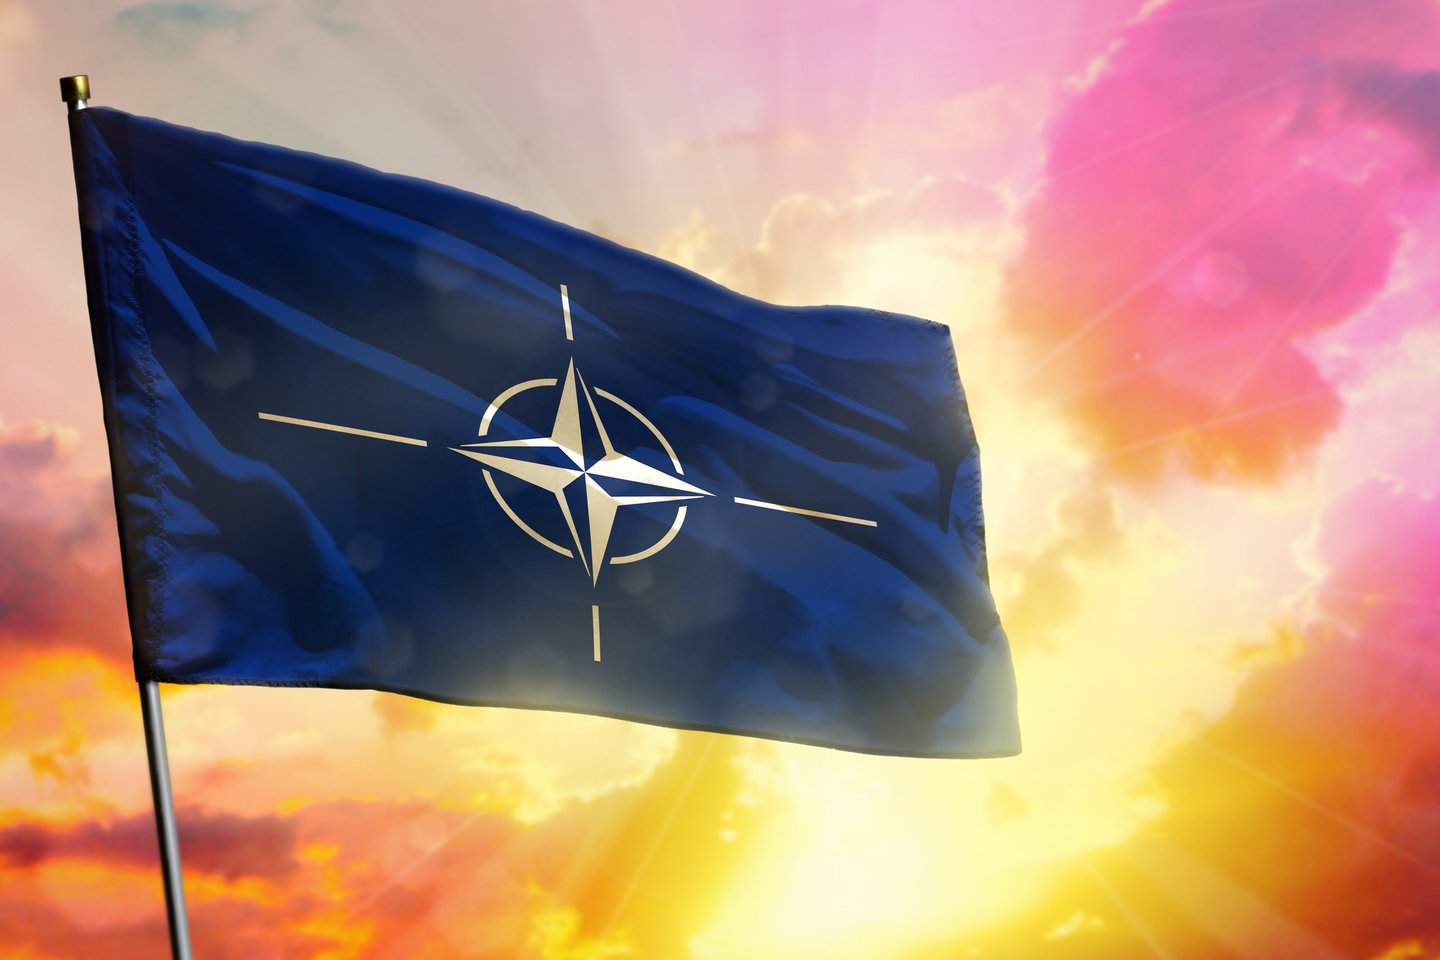 NATO vadovas perspėjo, kad Vakarai turi pasirengti ir toliau remti Ukrainą kare, kuris truks ne vienerius metus.<br> 123rf nuotr.